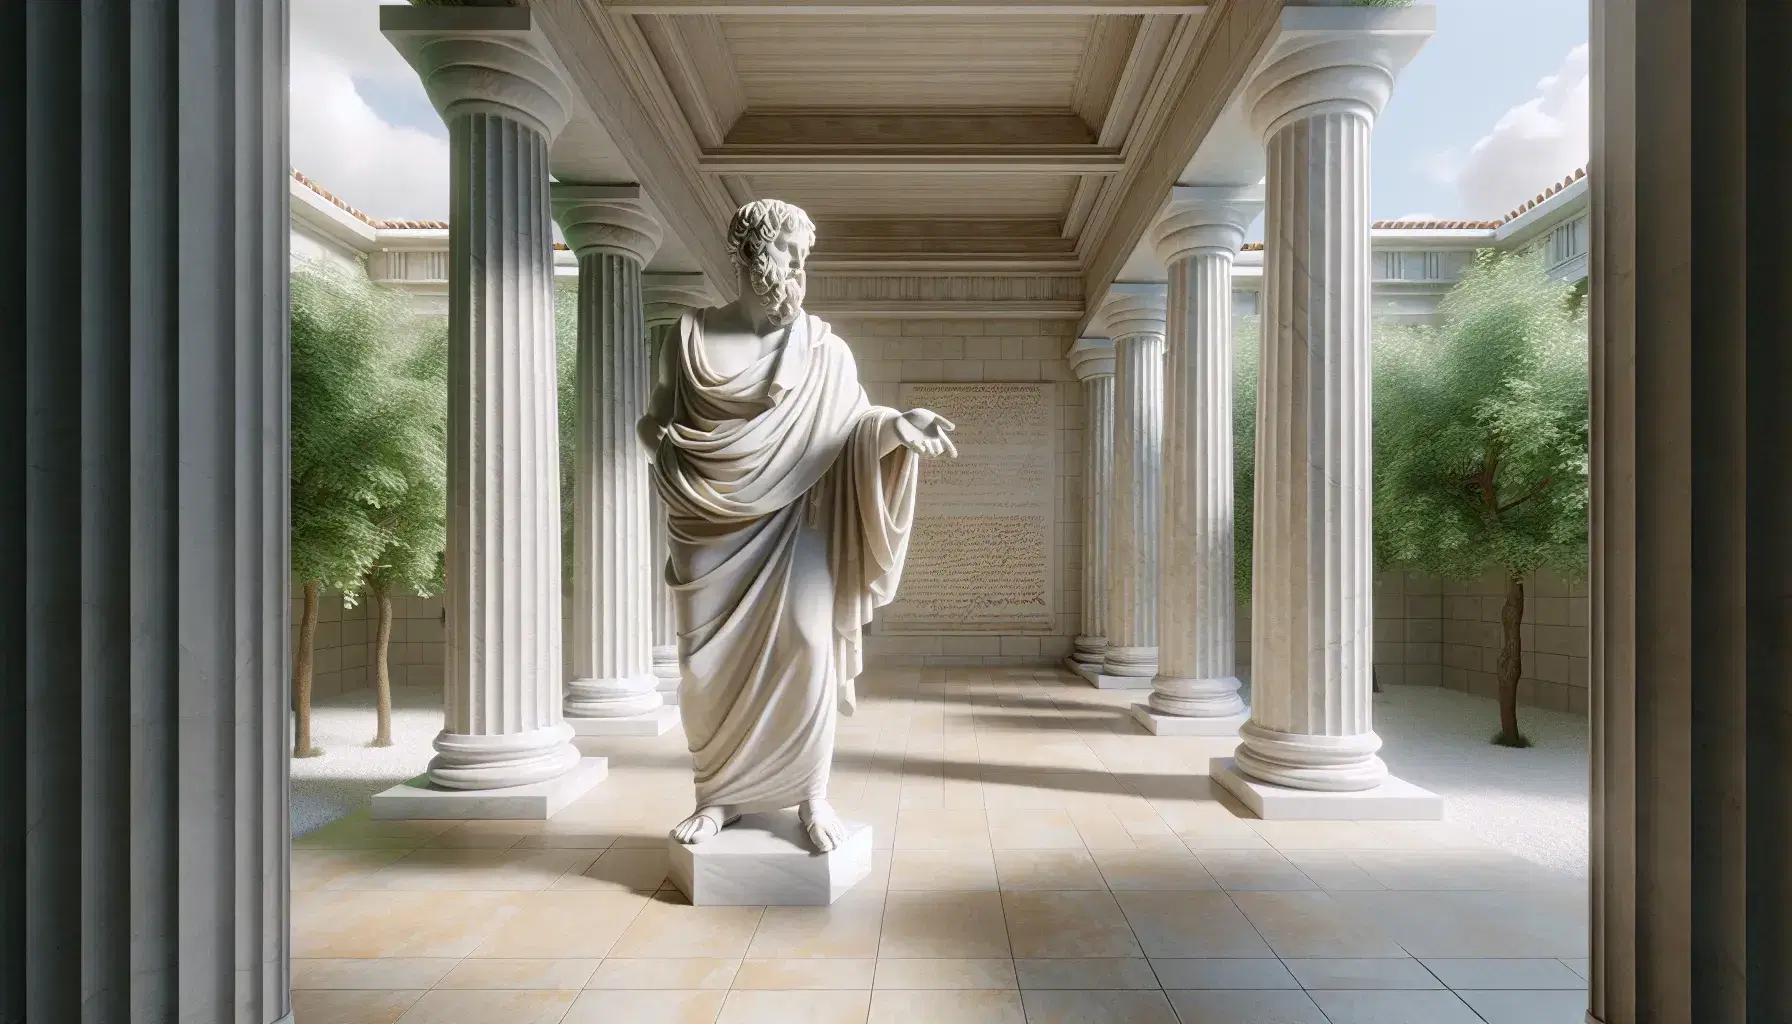 Escultura de mármol blanco de filósofo griego antiguo con túnica, extendiendo una mano y sosteniendo un rollo, en un patio con columnas dóricas y vegetación.